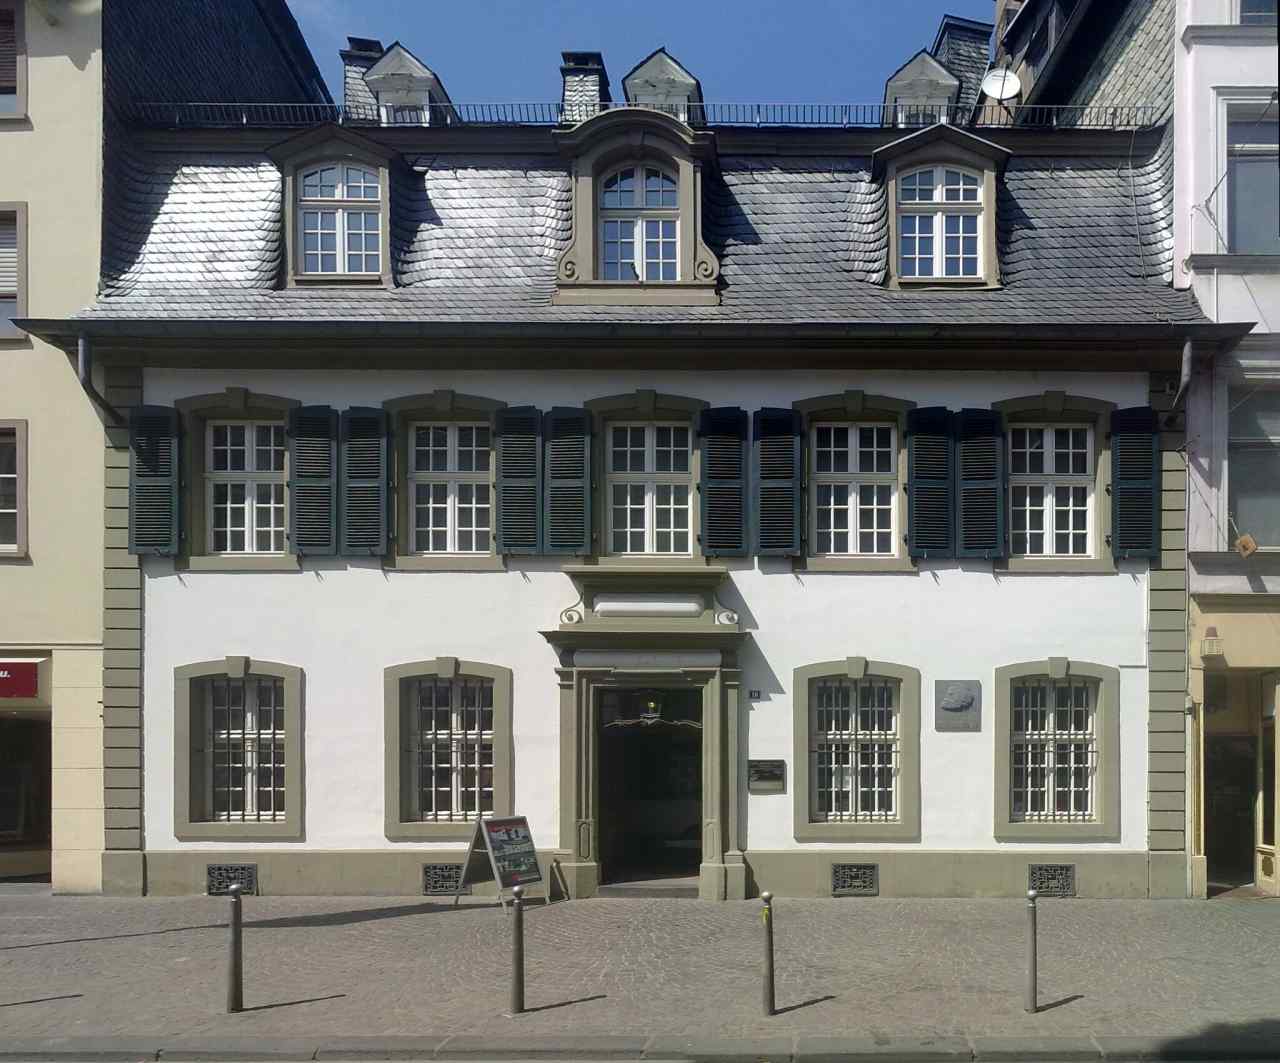 Karl Marx House, Trier, Germany